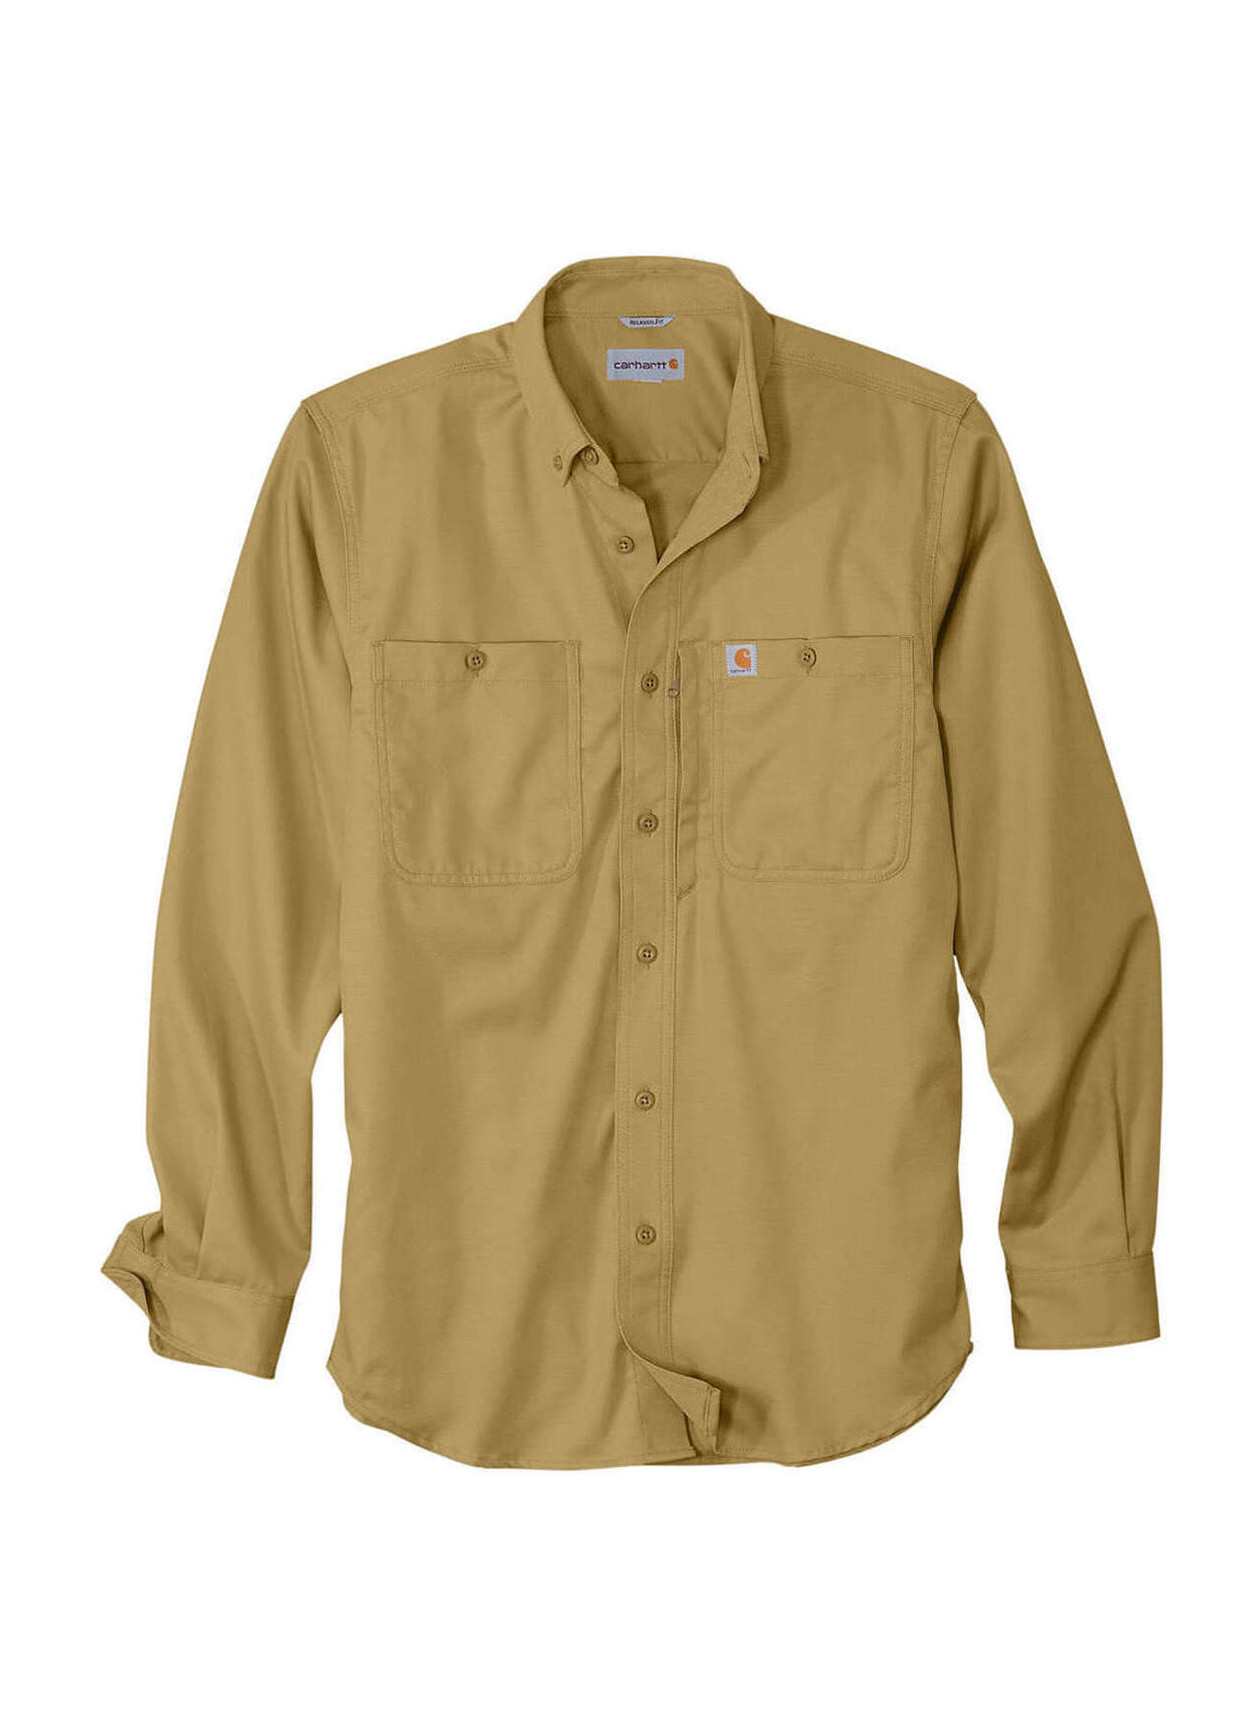 Carhartt Men's Long-Sleeve Rugged Flex Rigby Work Shirt, Navy